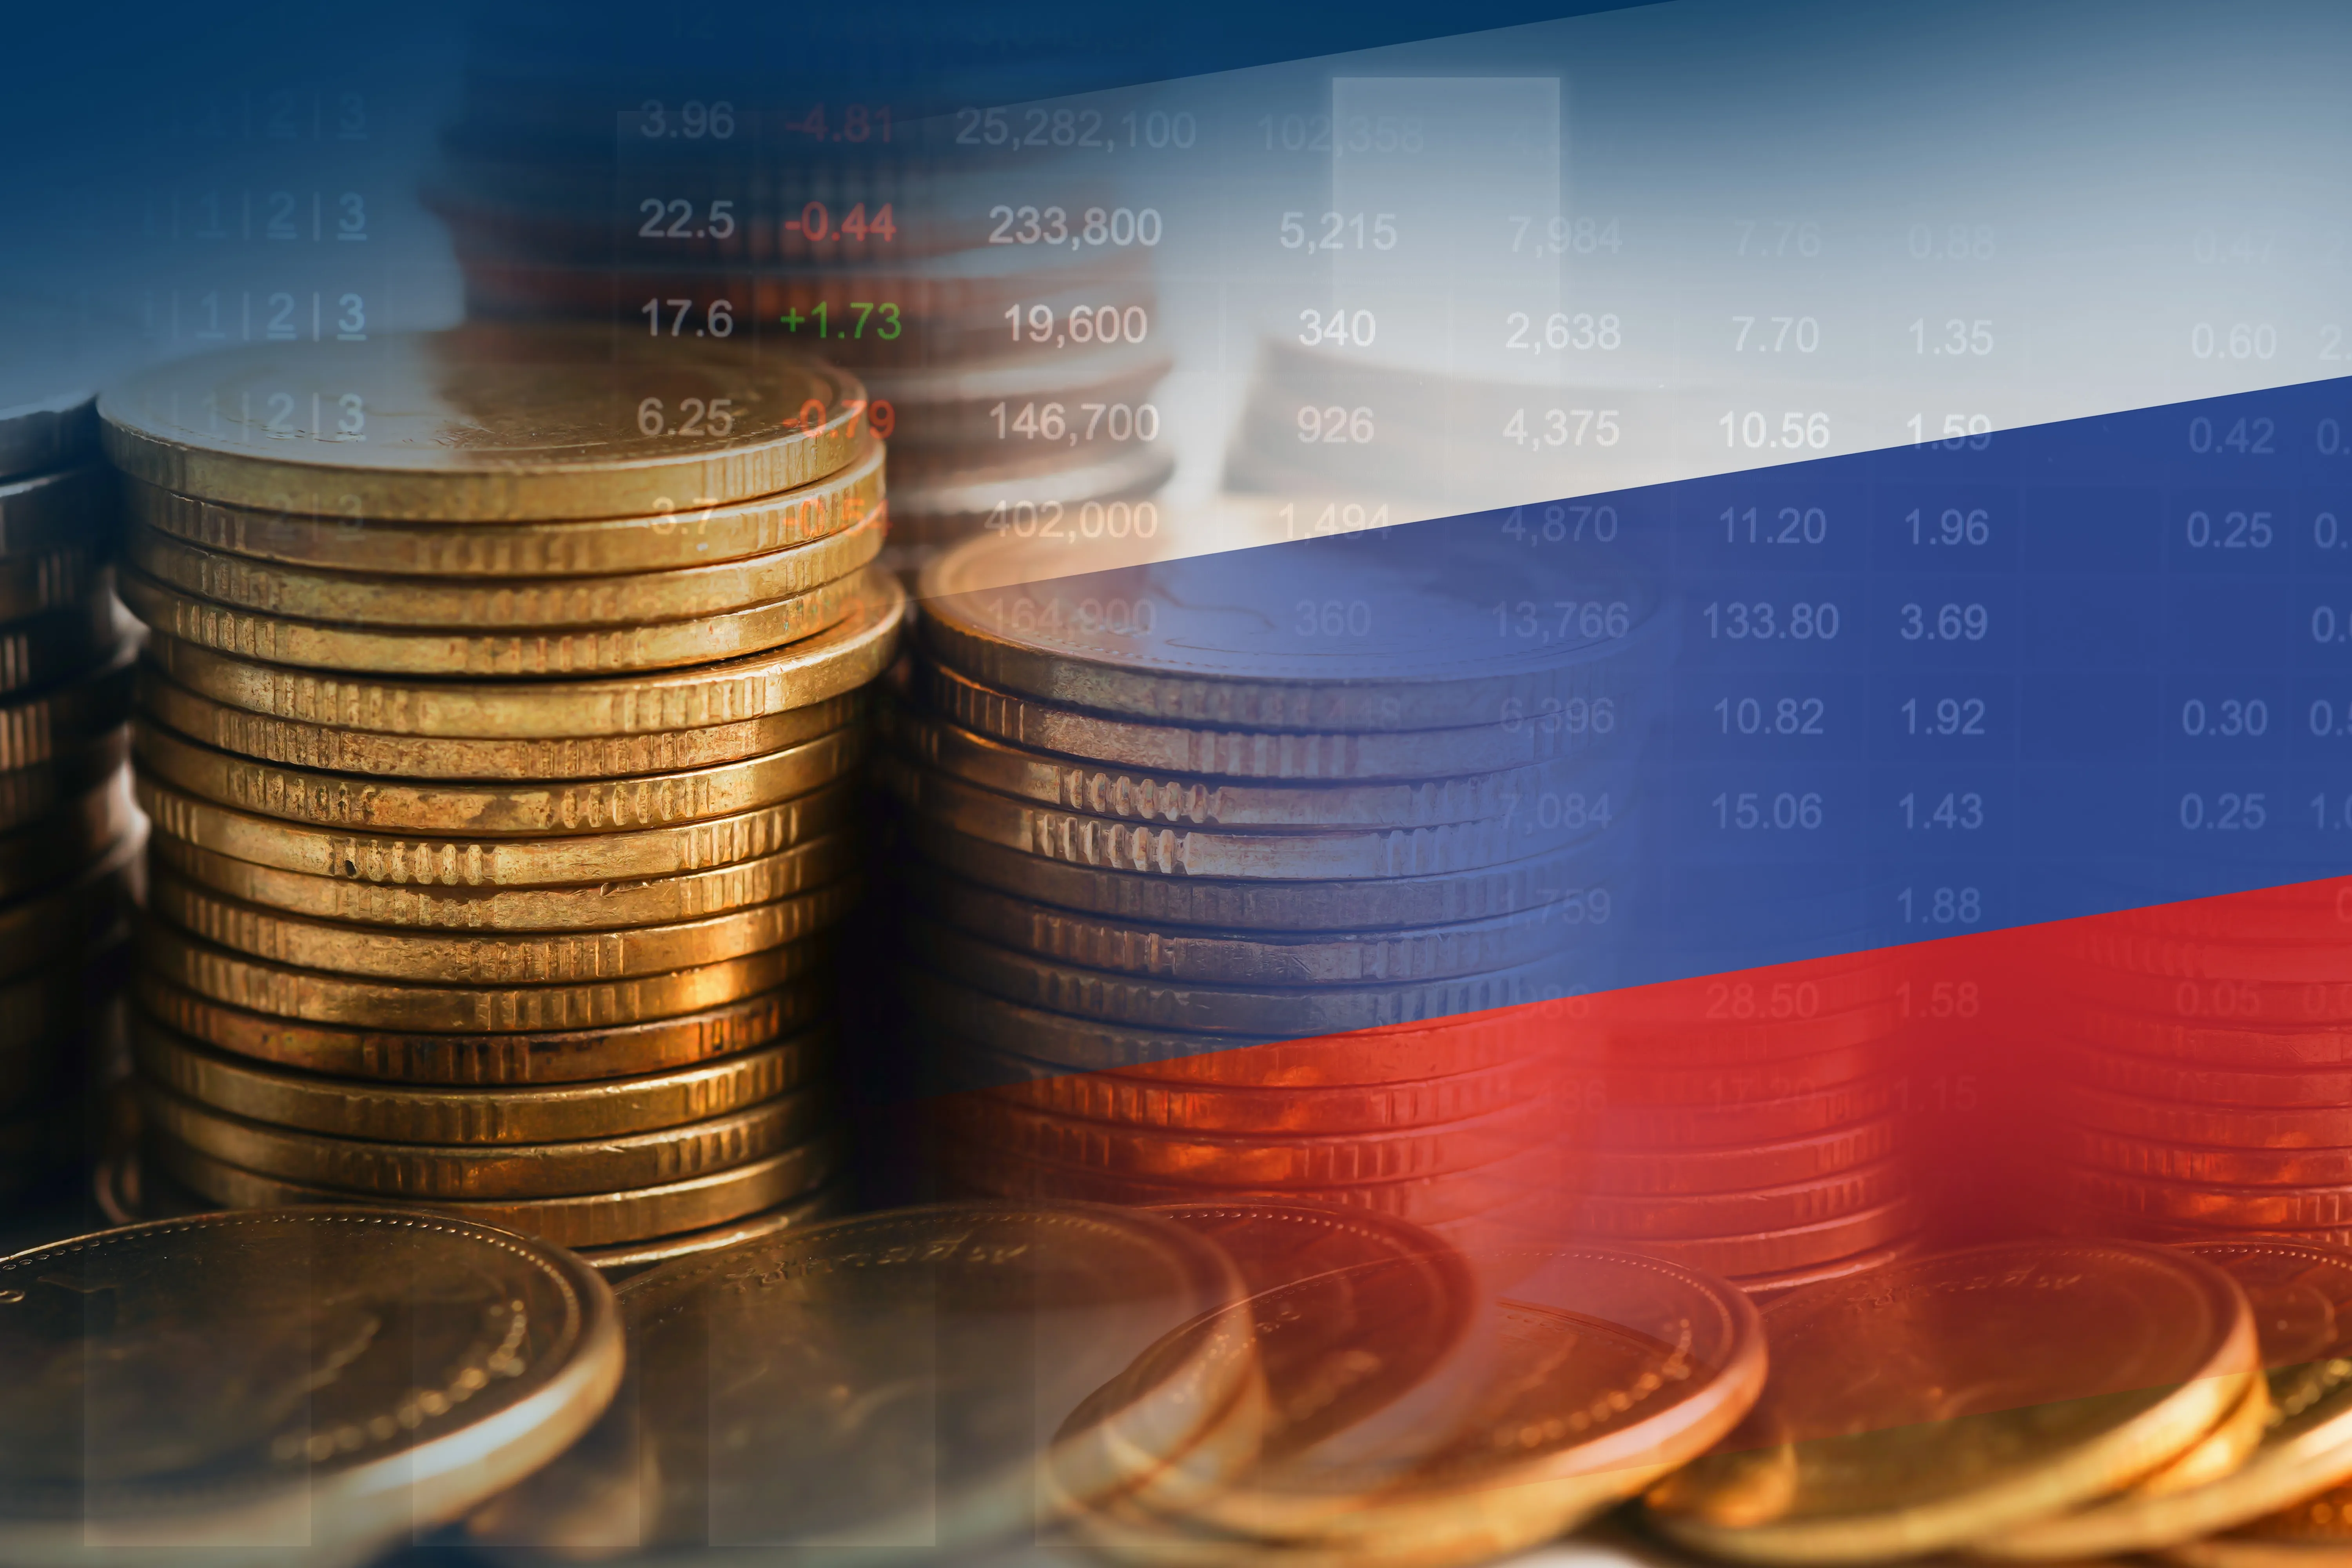 Попавшие под санкции миллиардеры теперь ориентируются на бизнес в РФ, пишут СМИ